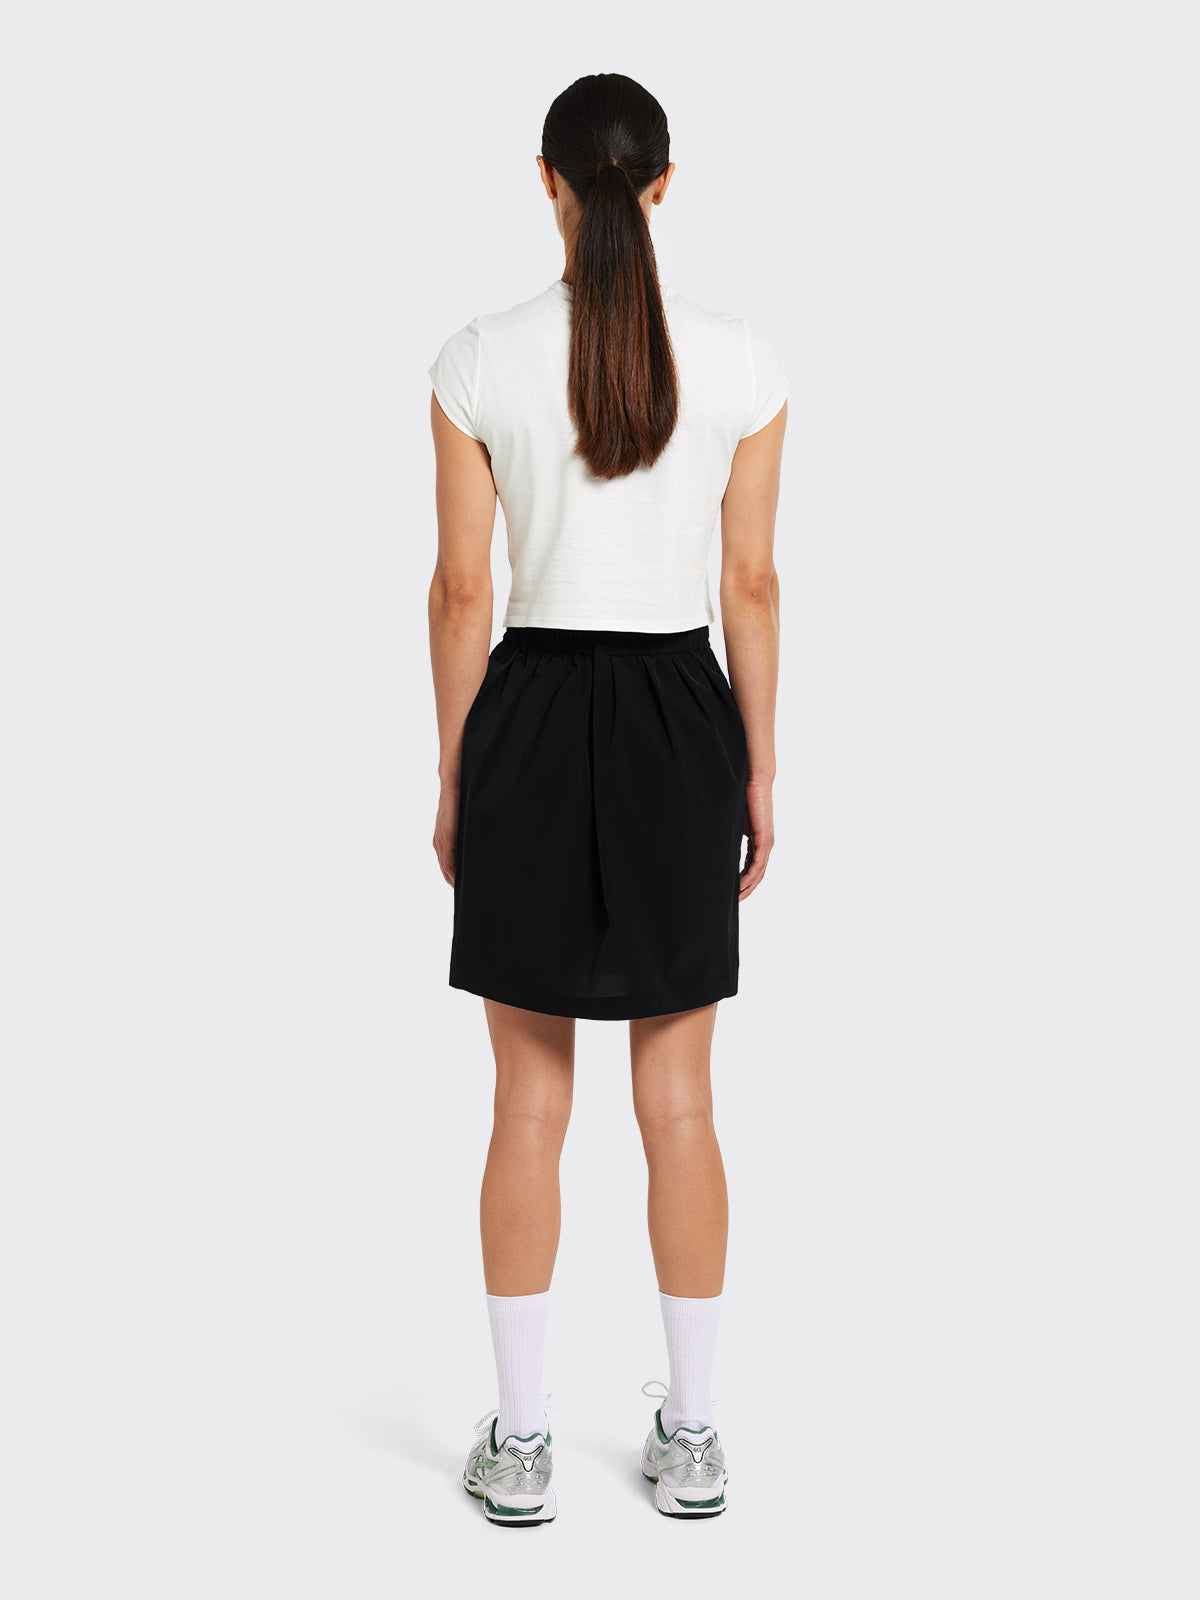 Hjelle lightweight skirt